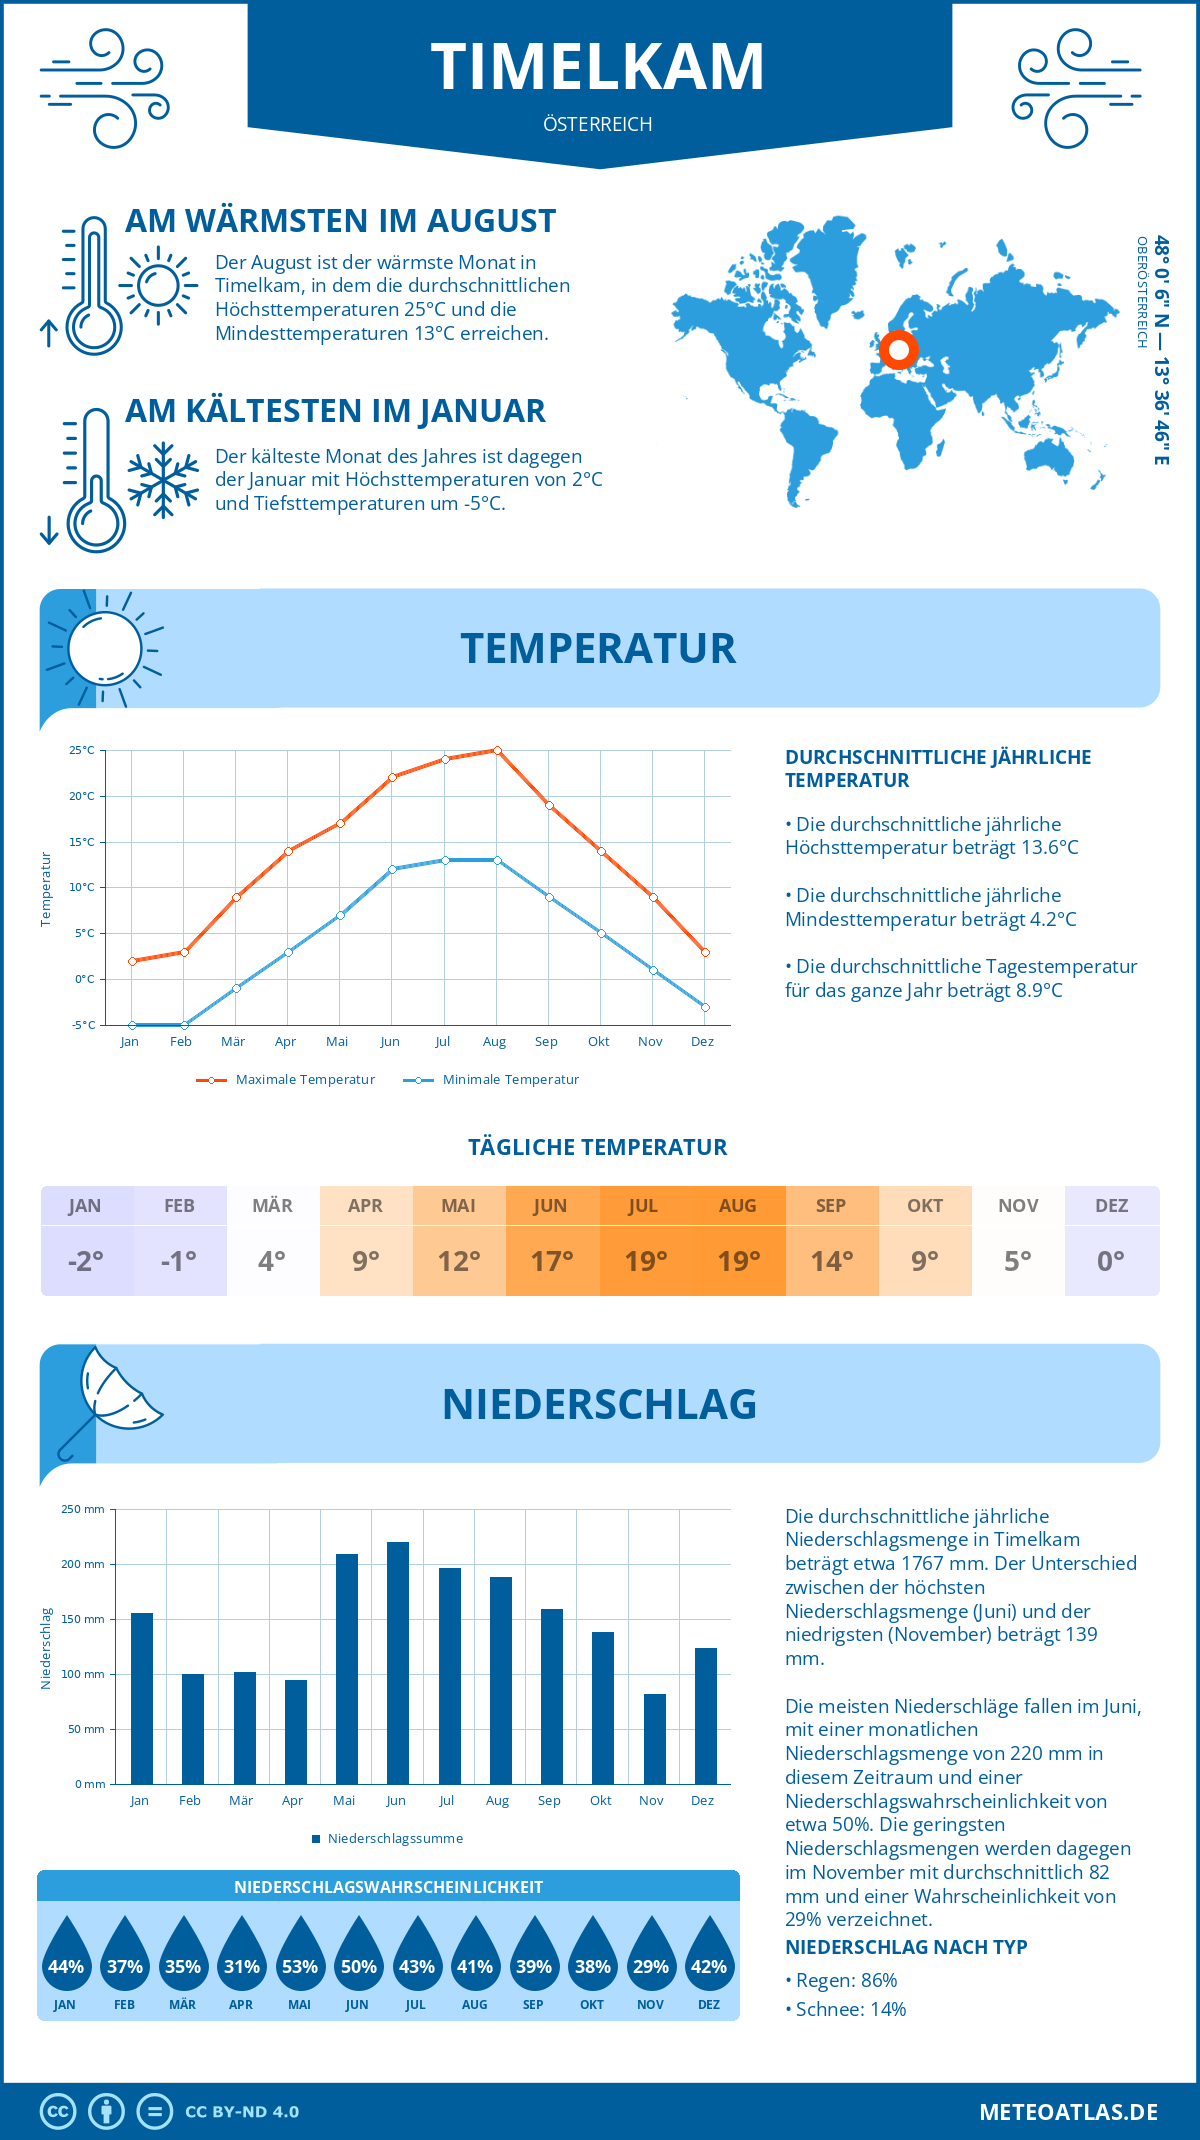 Wetter Timelkam (Österreich) - Temperatur und Niederschlag